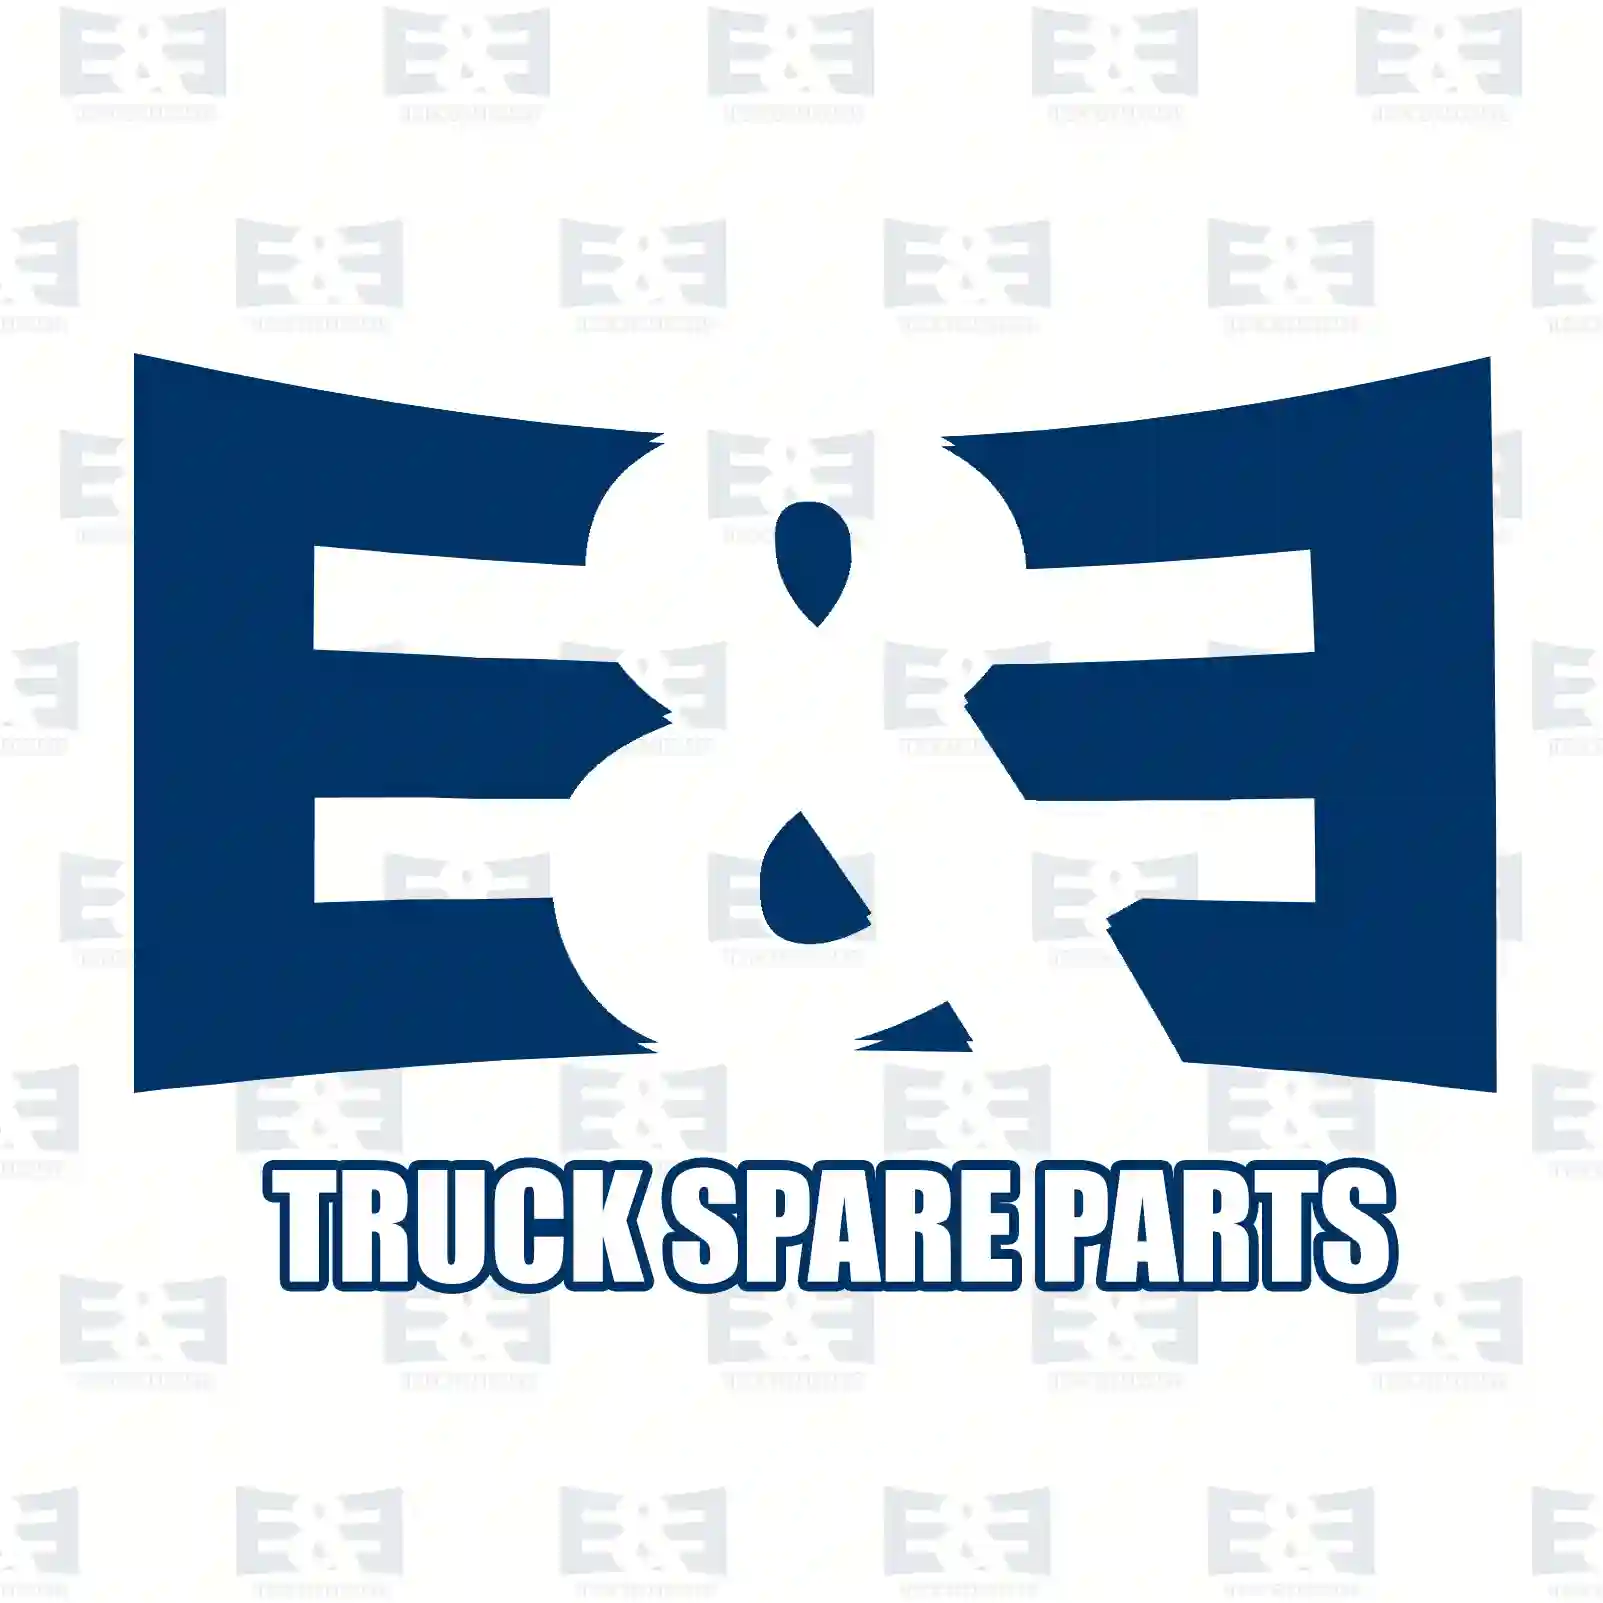 Disc brake pad kit, 2E2295230, 1824121, 1829400, 1840479, BK31-2K021-AC ||  2E2295230 E&E Truck Spare Parts | Truck Spare Parts, Auotomotive Spare Parts Disc brake pad kit, 2E2295230, 1824121, 1829400, 1840479, BK31-2K021-AC ||  2E2295230 E&E Truck Spare Parts | Truck Spare Parts, Auotomotive Spare Parts